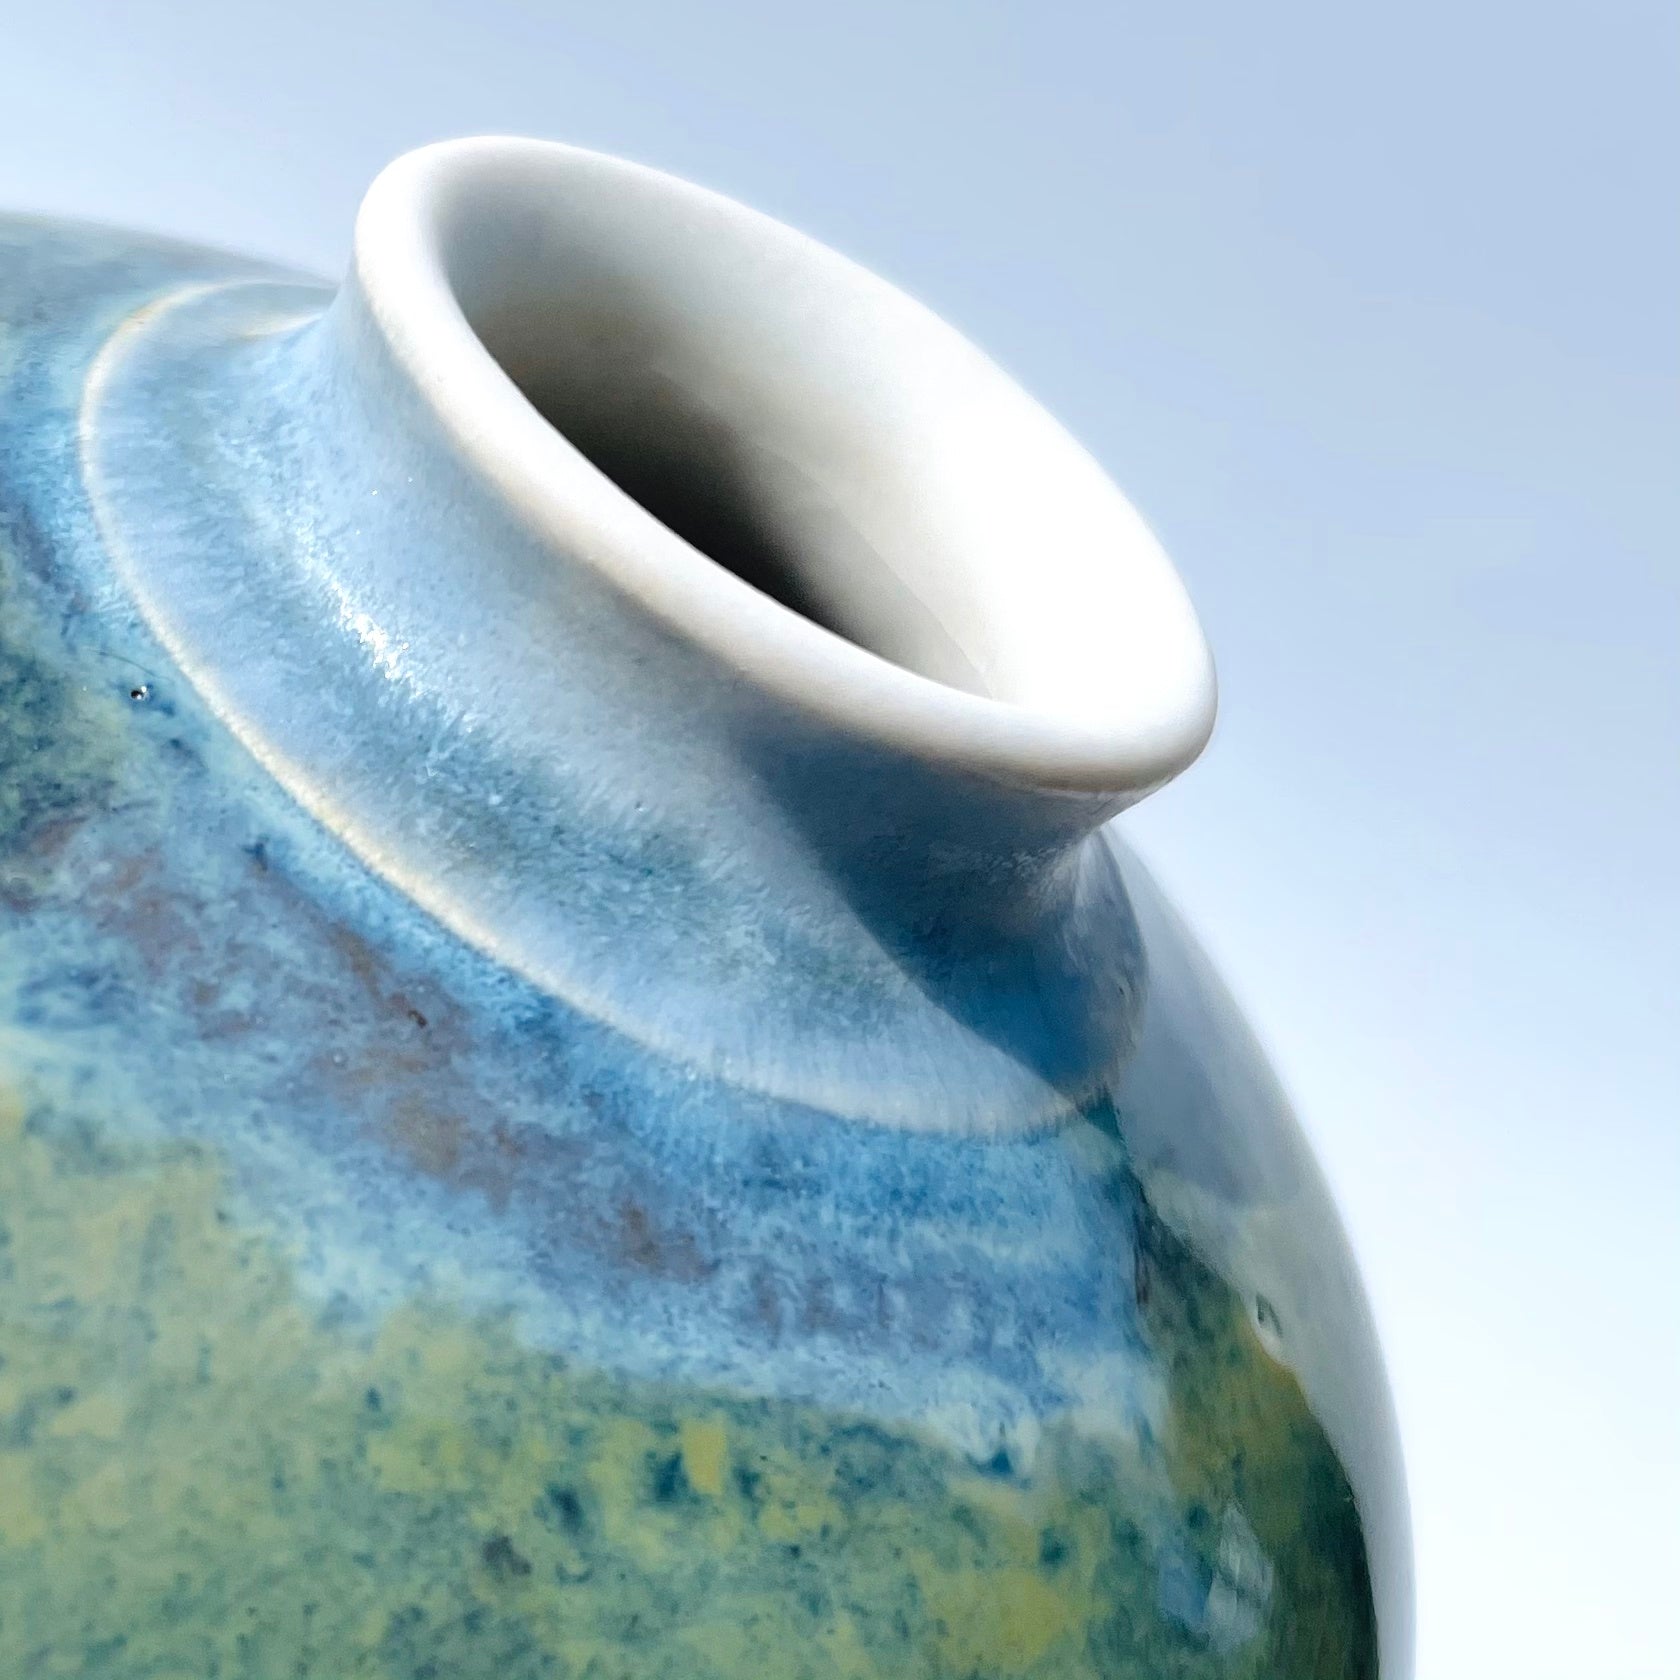 Sea Blue Bud Vase